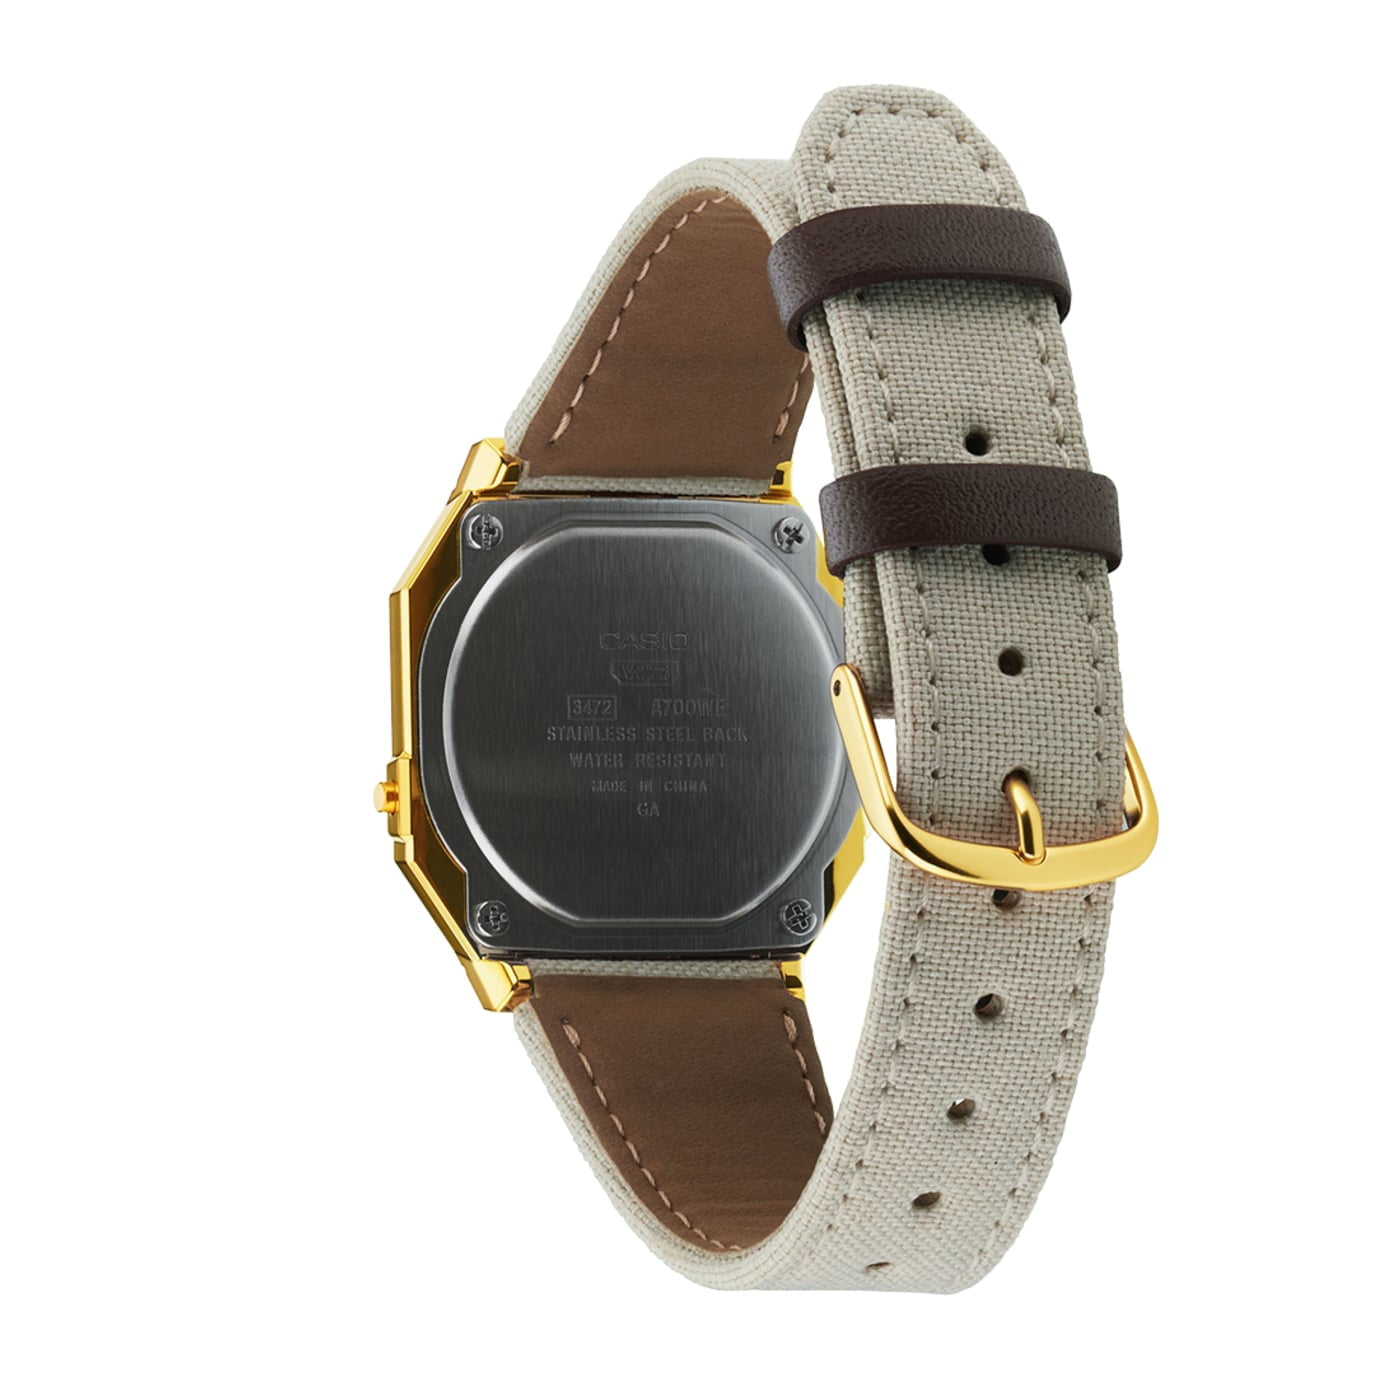 Casio A700WEGL-7AEF watch